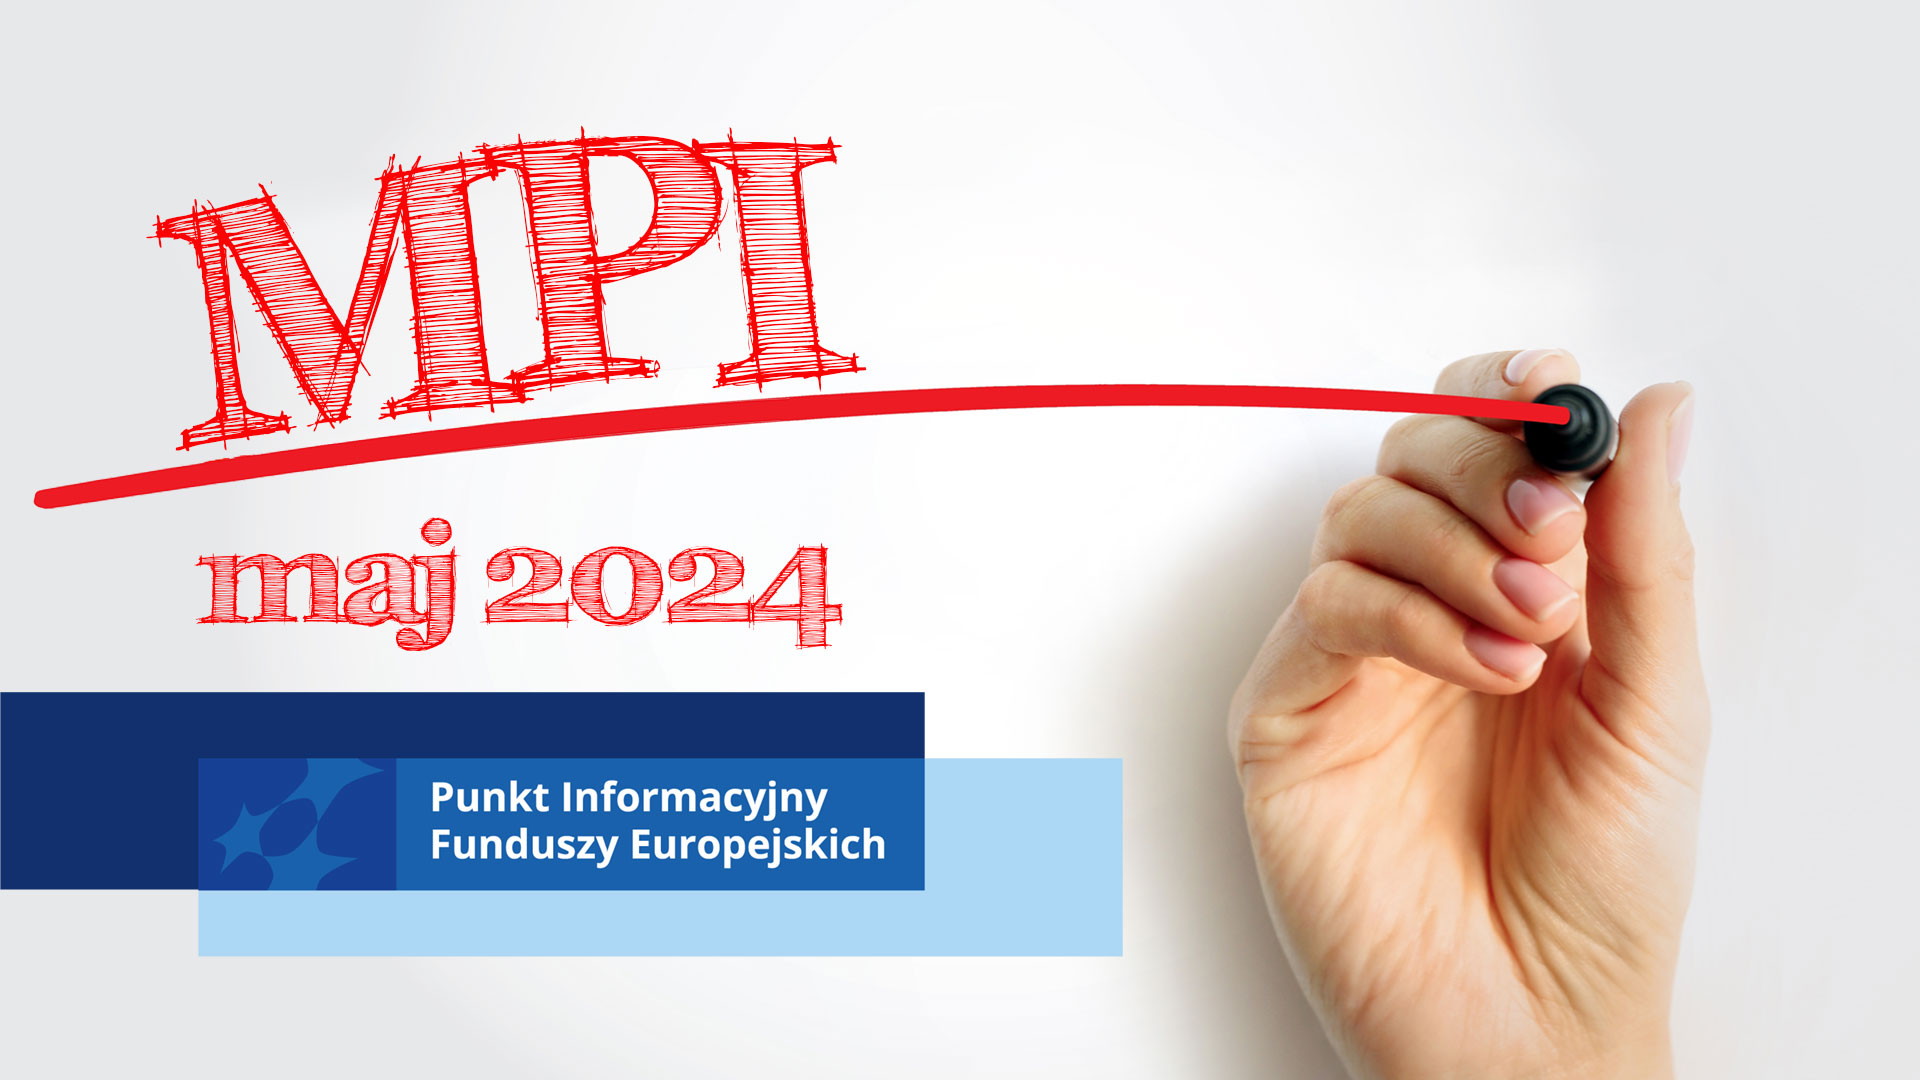 Półokrągła czerowna linia linia narysowana mazakiem trzymanym przez dłoń z prawej strony obrazka, poza tym logo "Fundusze Europejskie" oraz napis MPI maj 2024 r.